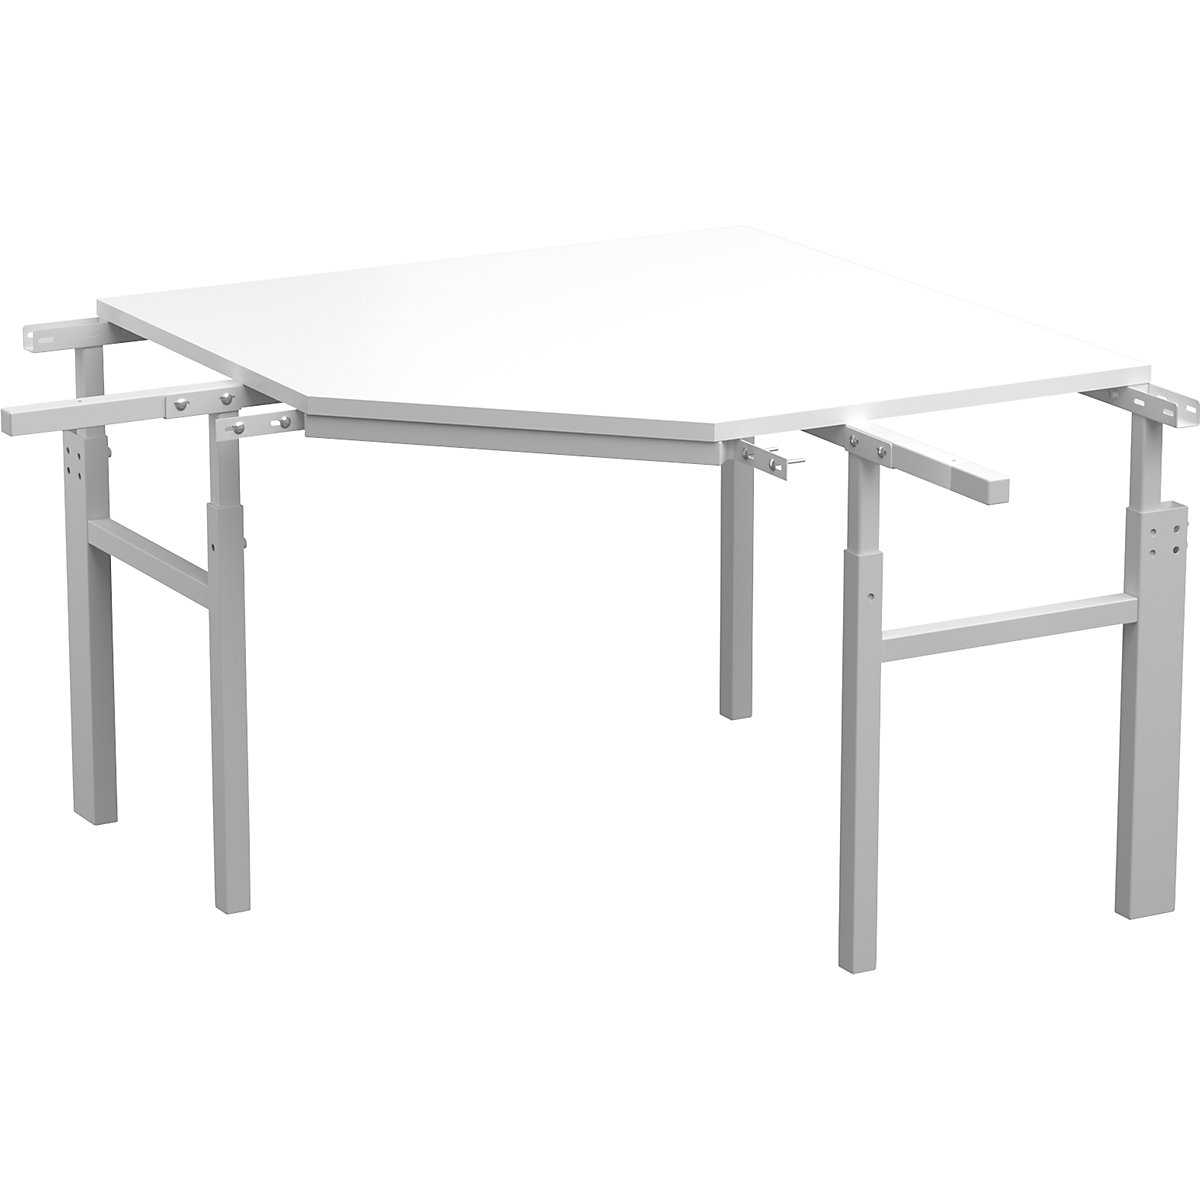 Tavolo angolare serie TP – Treston, con altezza regolabile manualmente, per 2 tavoli di base con mensolina, profondità 700 mm-3